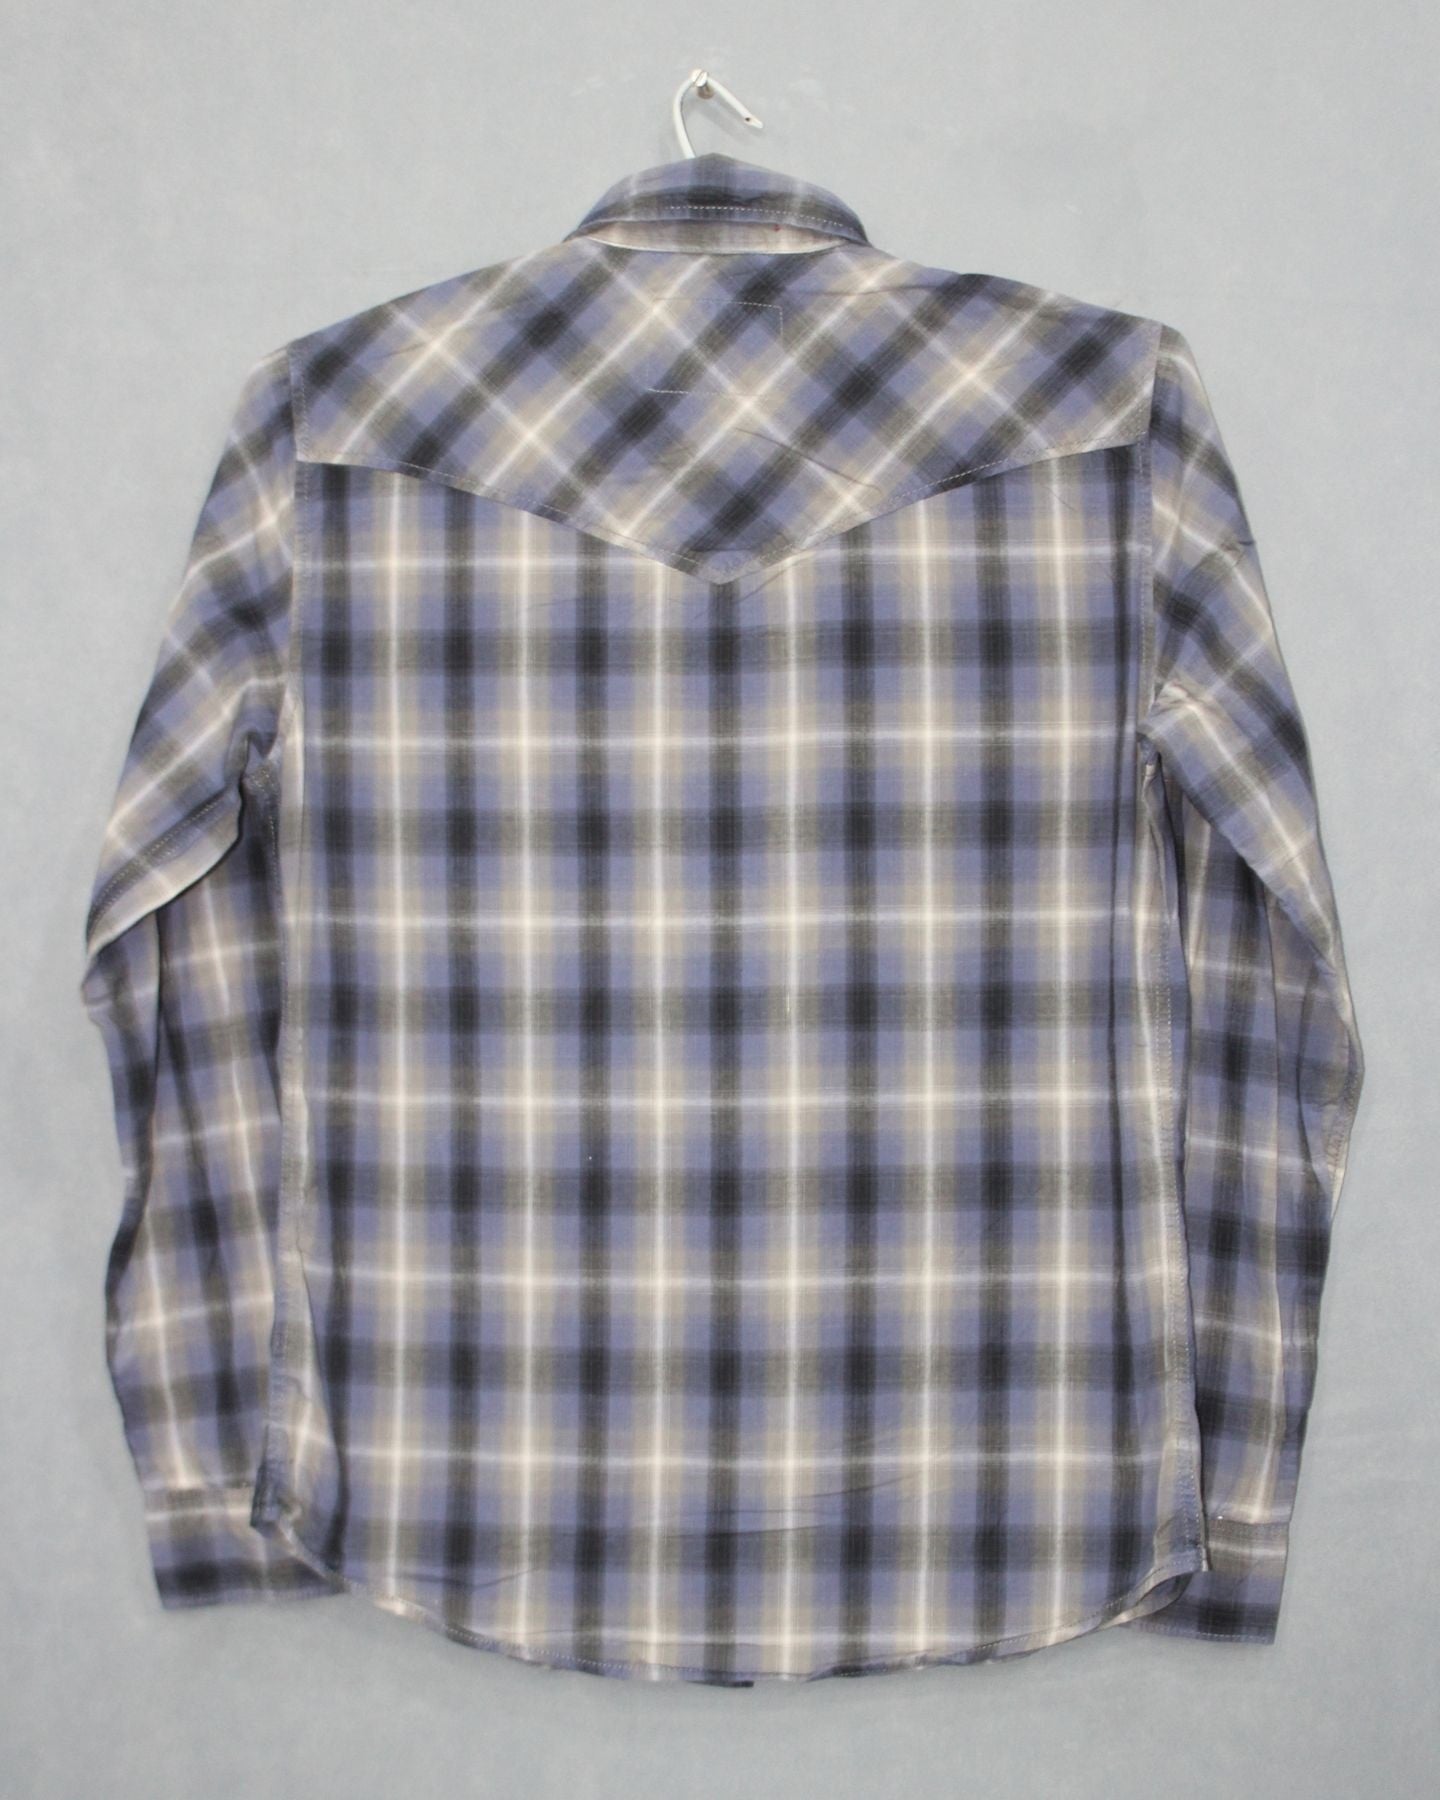 Christian Audigier Branded Original Cotton Shirt For Men